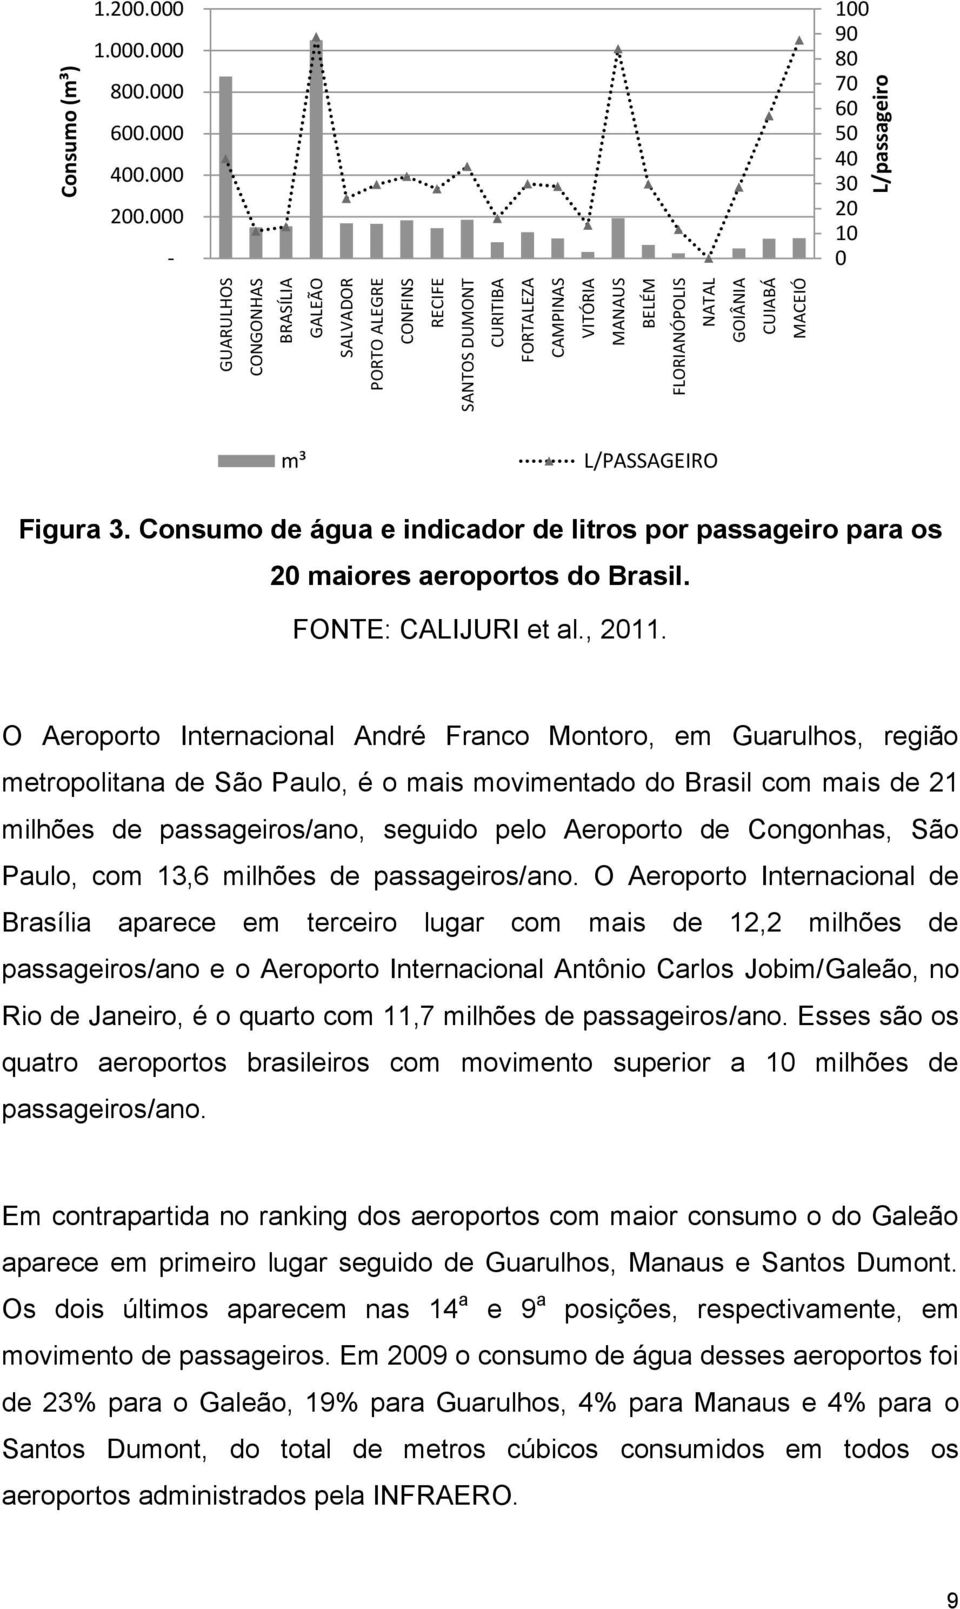 Consumo de água e indicador de litros por passageiro para os 20 maiores aeroportos do Brasil. FONTE: CALIJURI et al., 2011.